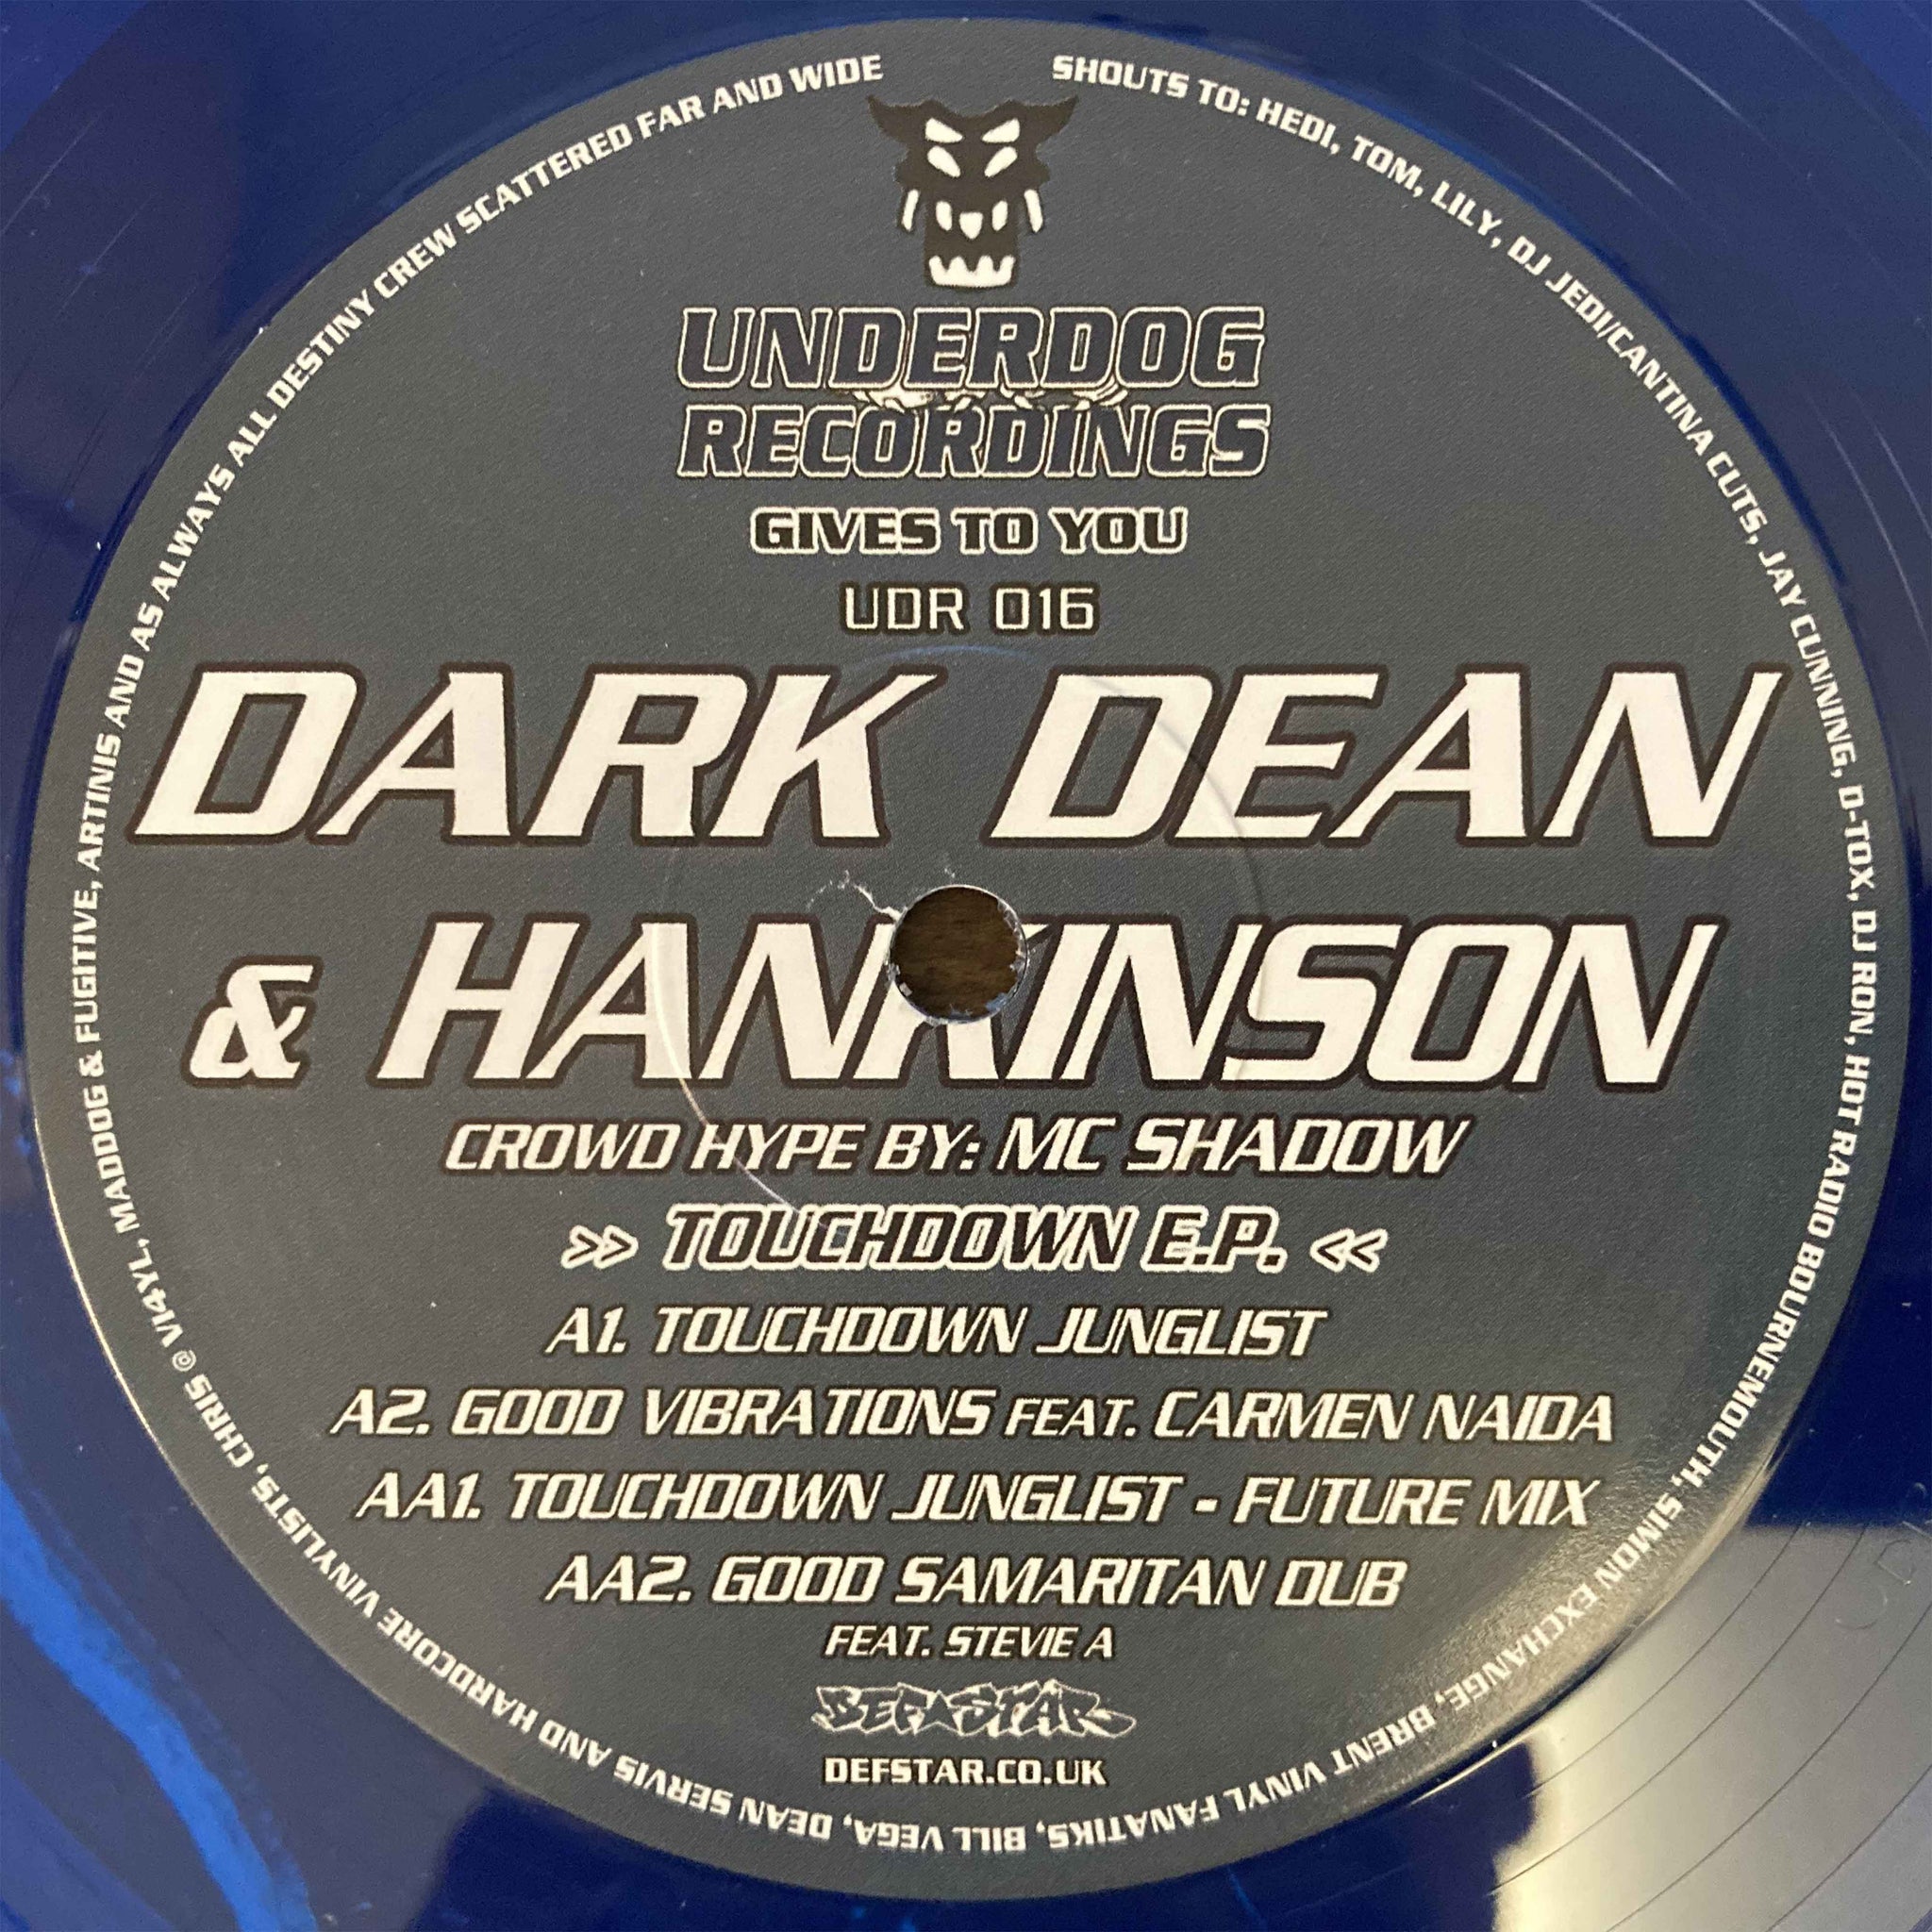 Dark Dean & Hankinson - Touchdown EP